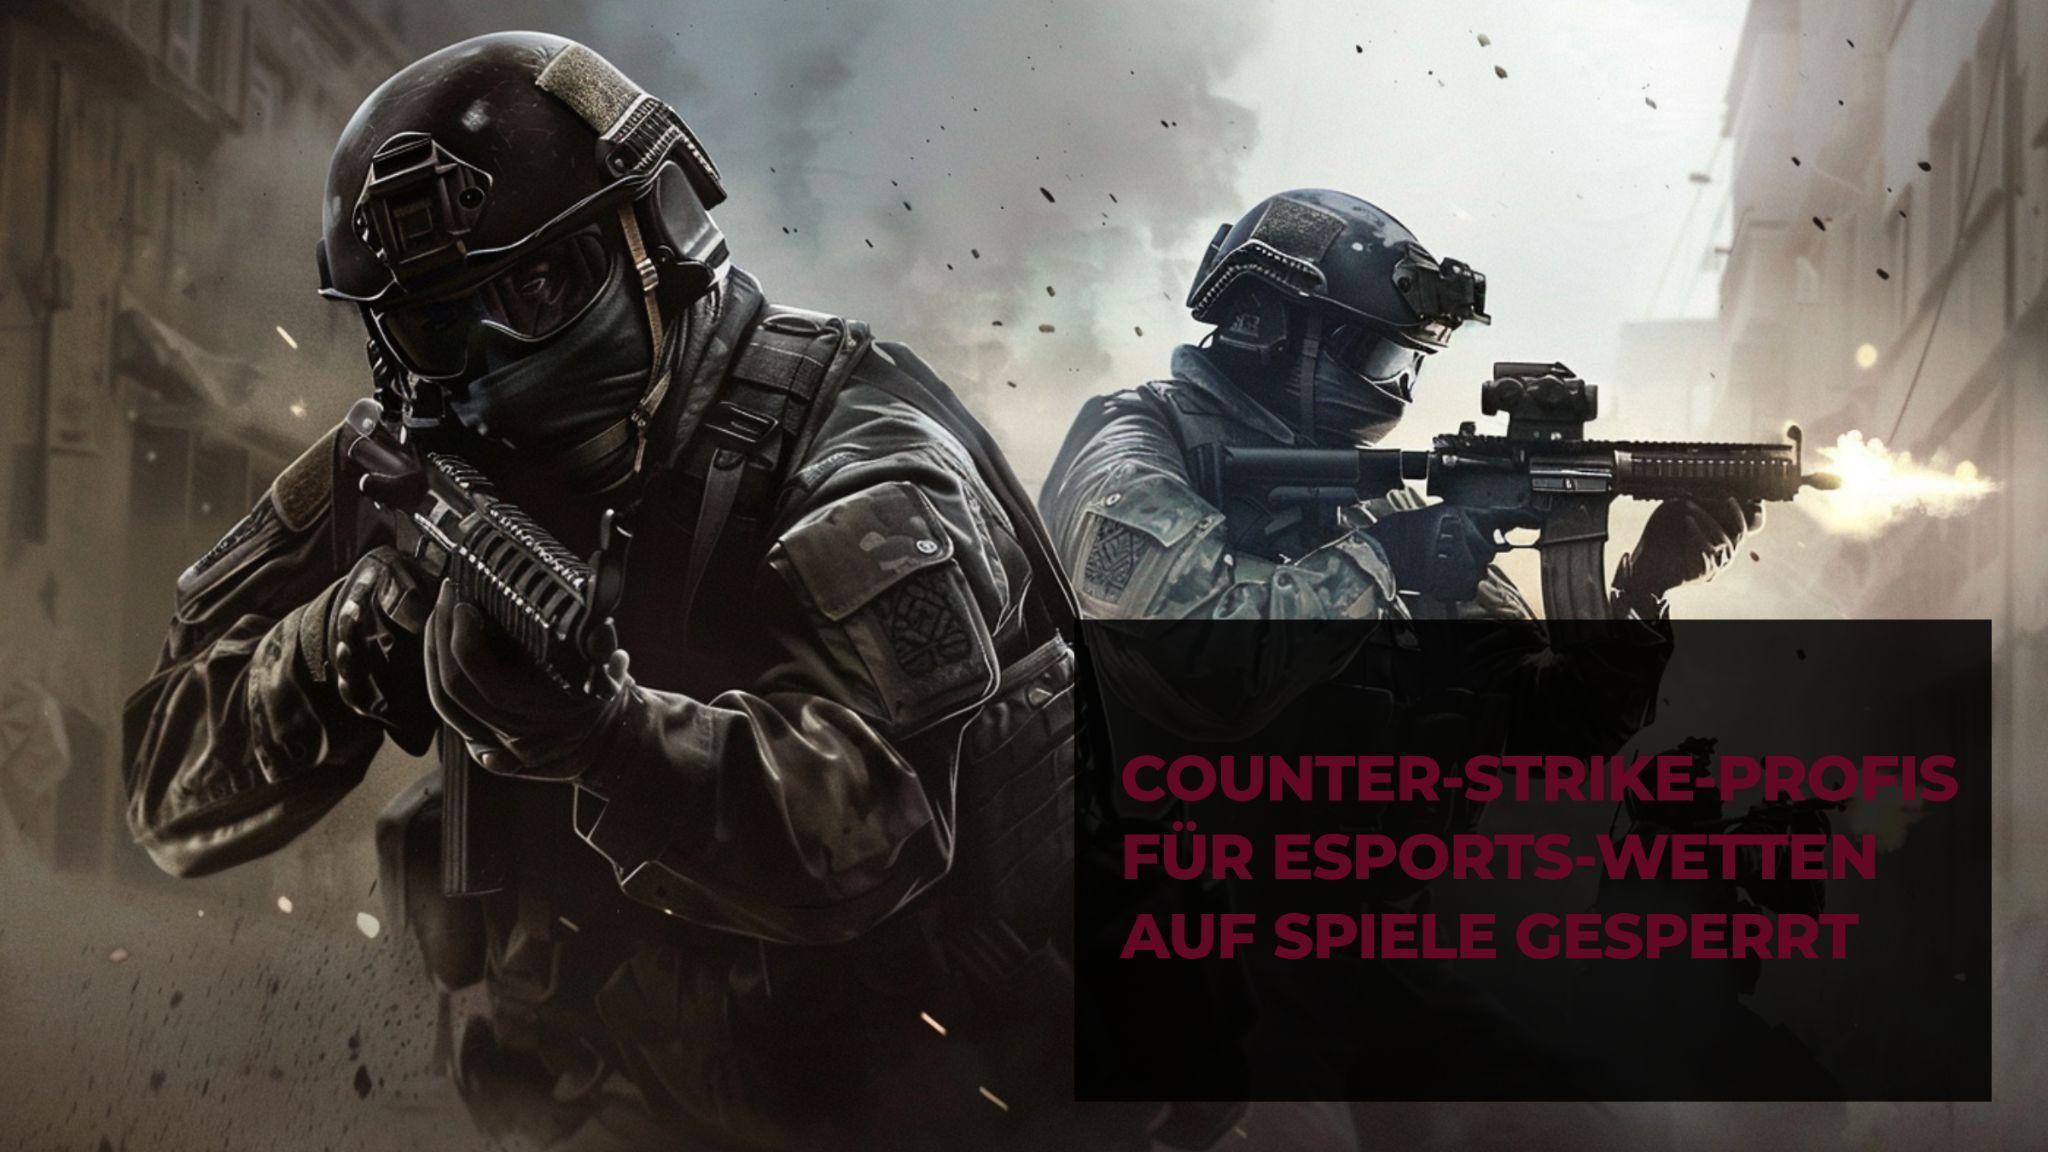 Se prohíbe a los profesionales de Counter-Strike apostar en partidos de ESports